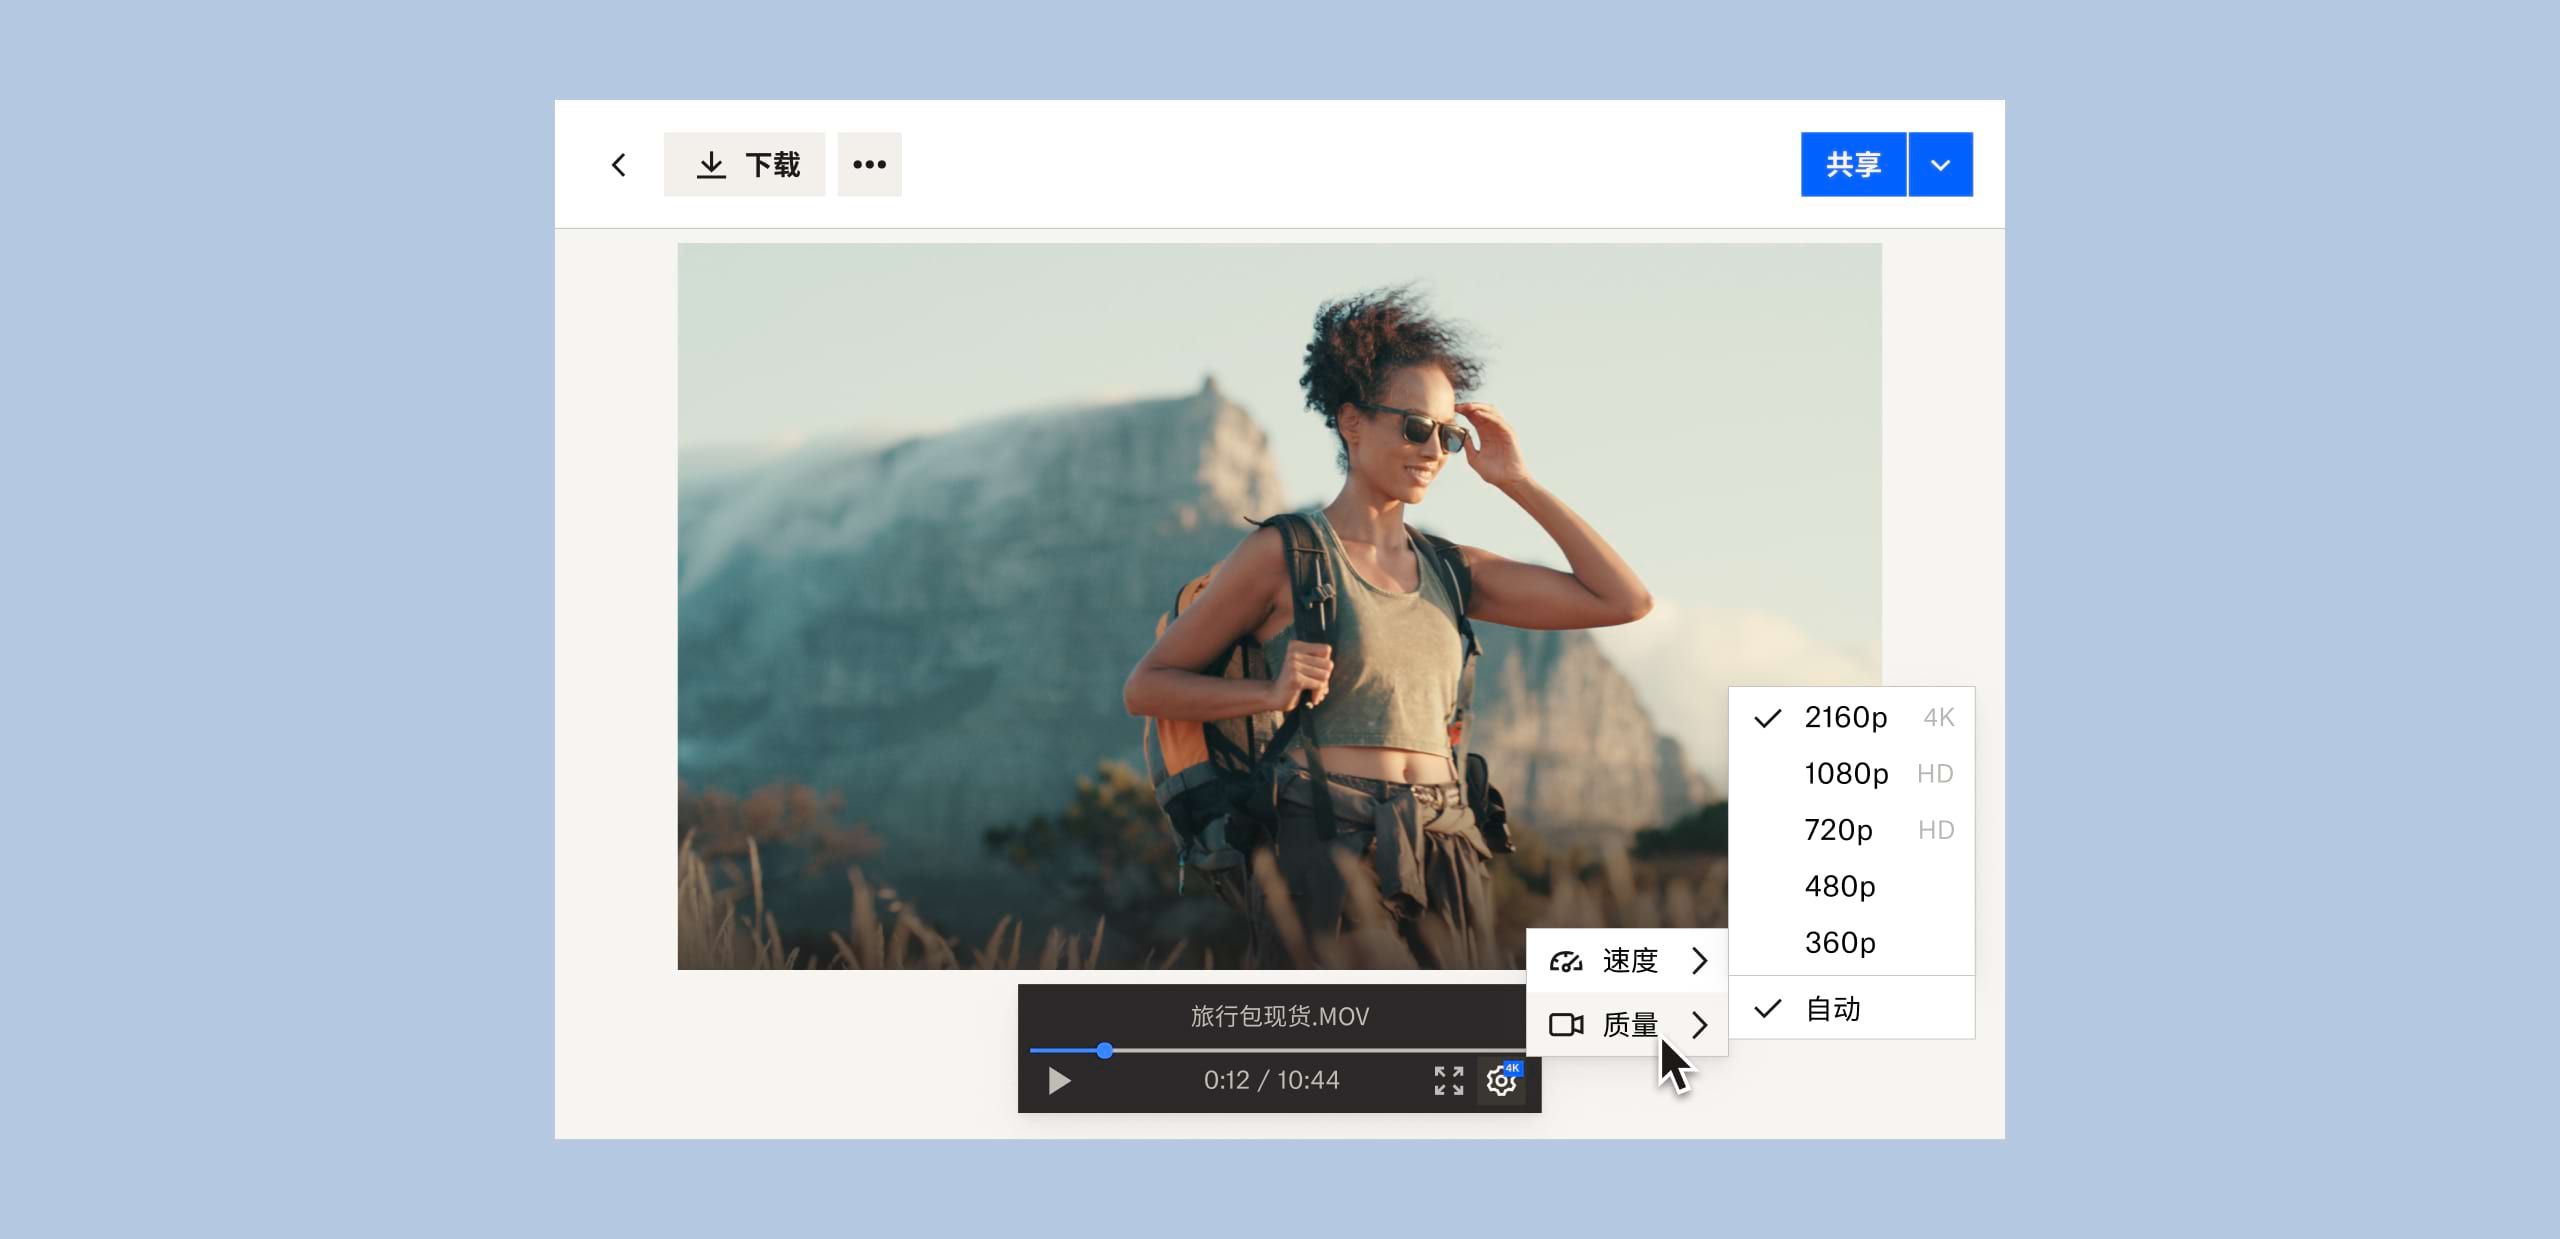 用户更改保存在 Dropbox 中的视频文件的图像质量